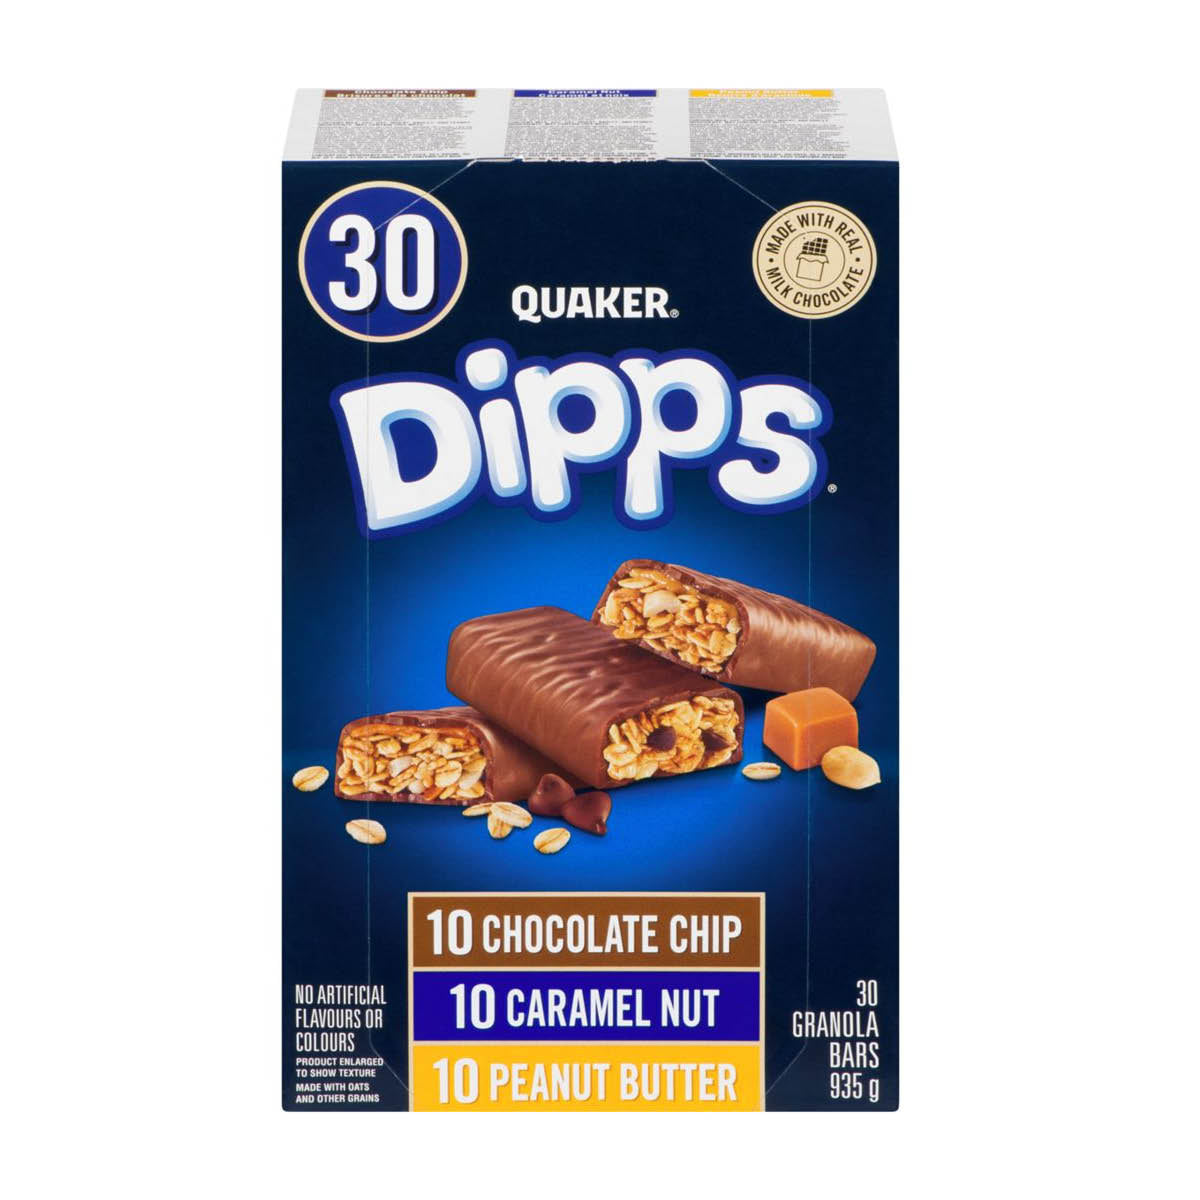 Quaker Dipps Granola Bars Variety Pack, 30pk, 935g